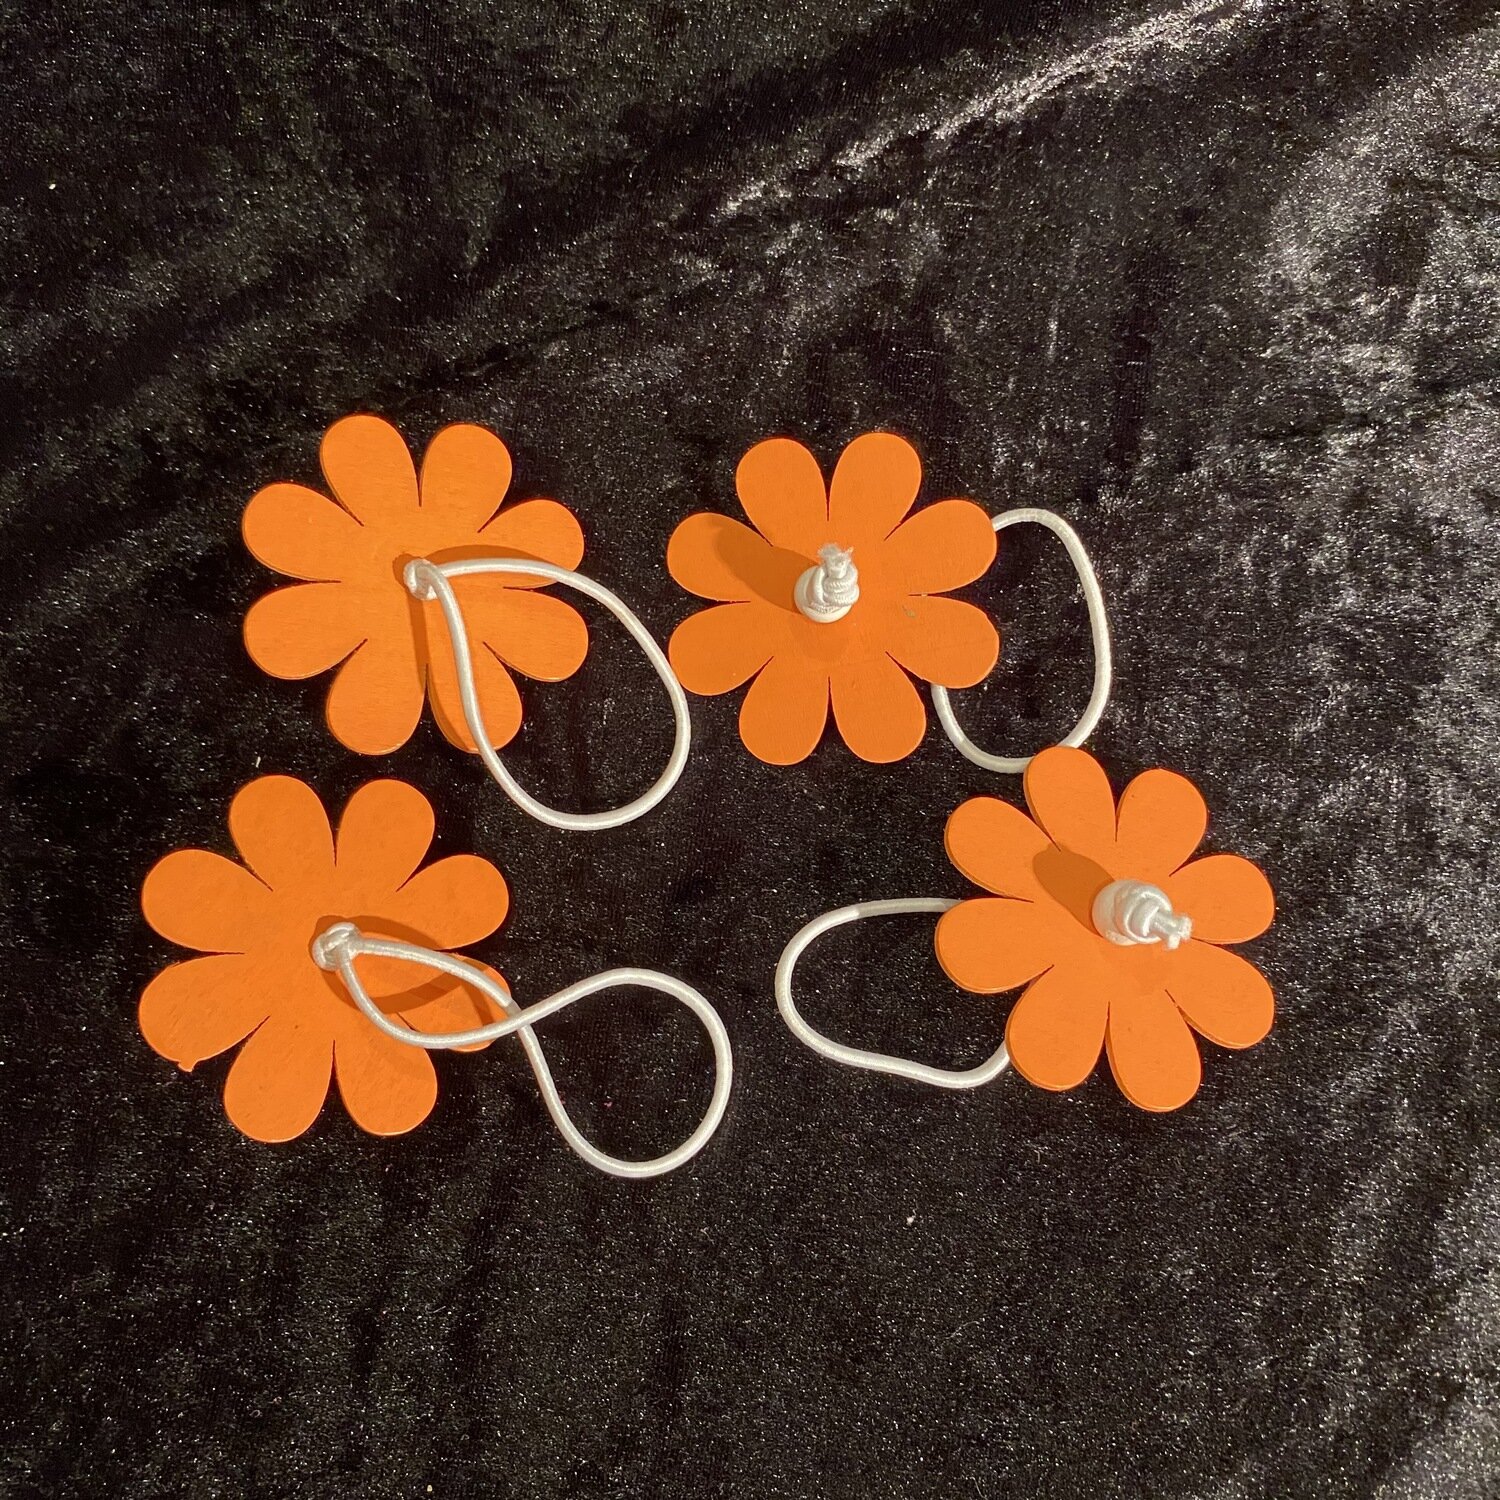 Ronds serviettes fleur bois x4p clementine